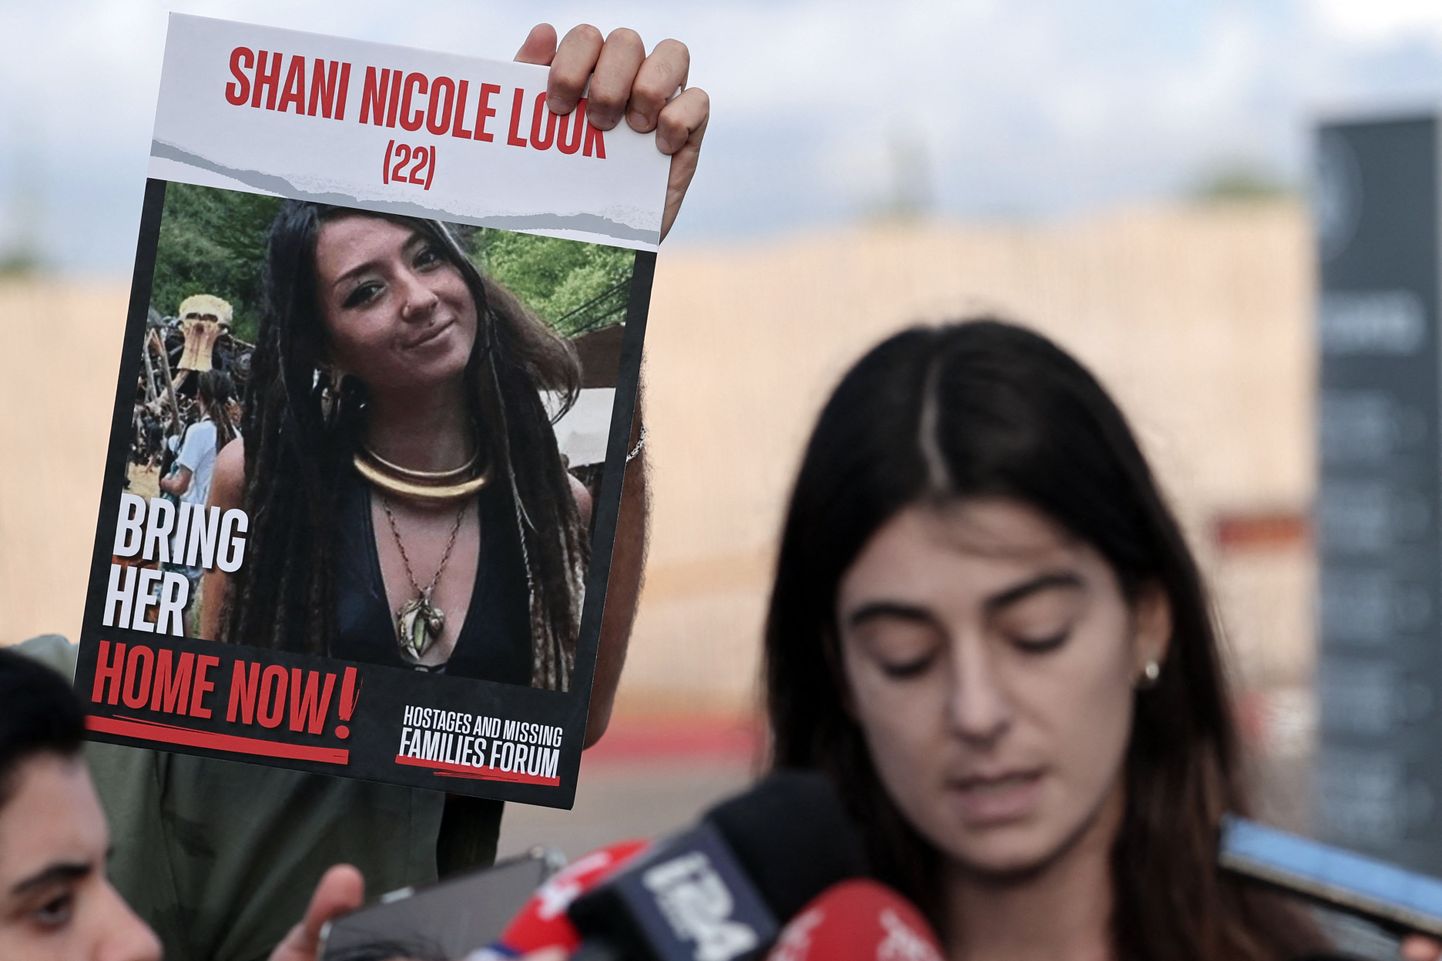 Hamasi röövitud Shani Louki sugulane rääkimas 15. oktoobril 2023 Iisraelis Ramlas meediaga. Näha oli ka Shani Louki fotot. Nüüdseks on teada, et Hamasi sõdalased tapsid Louki.